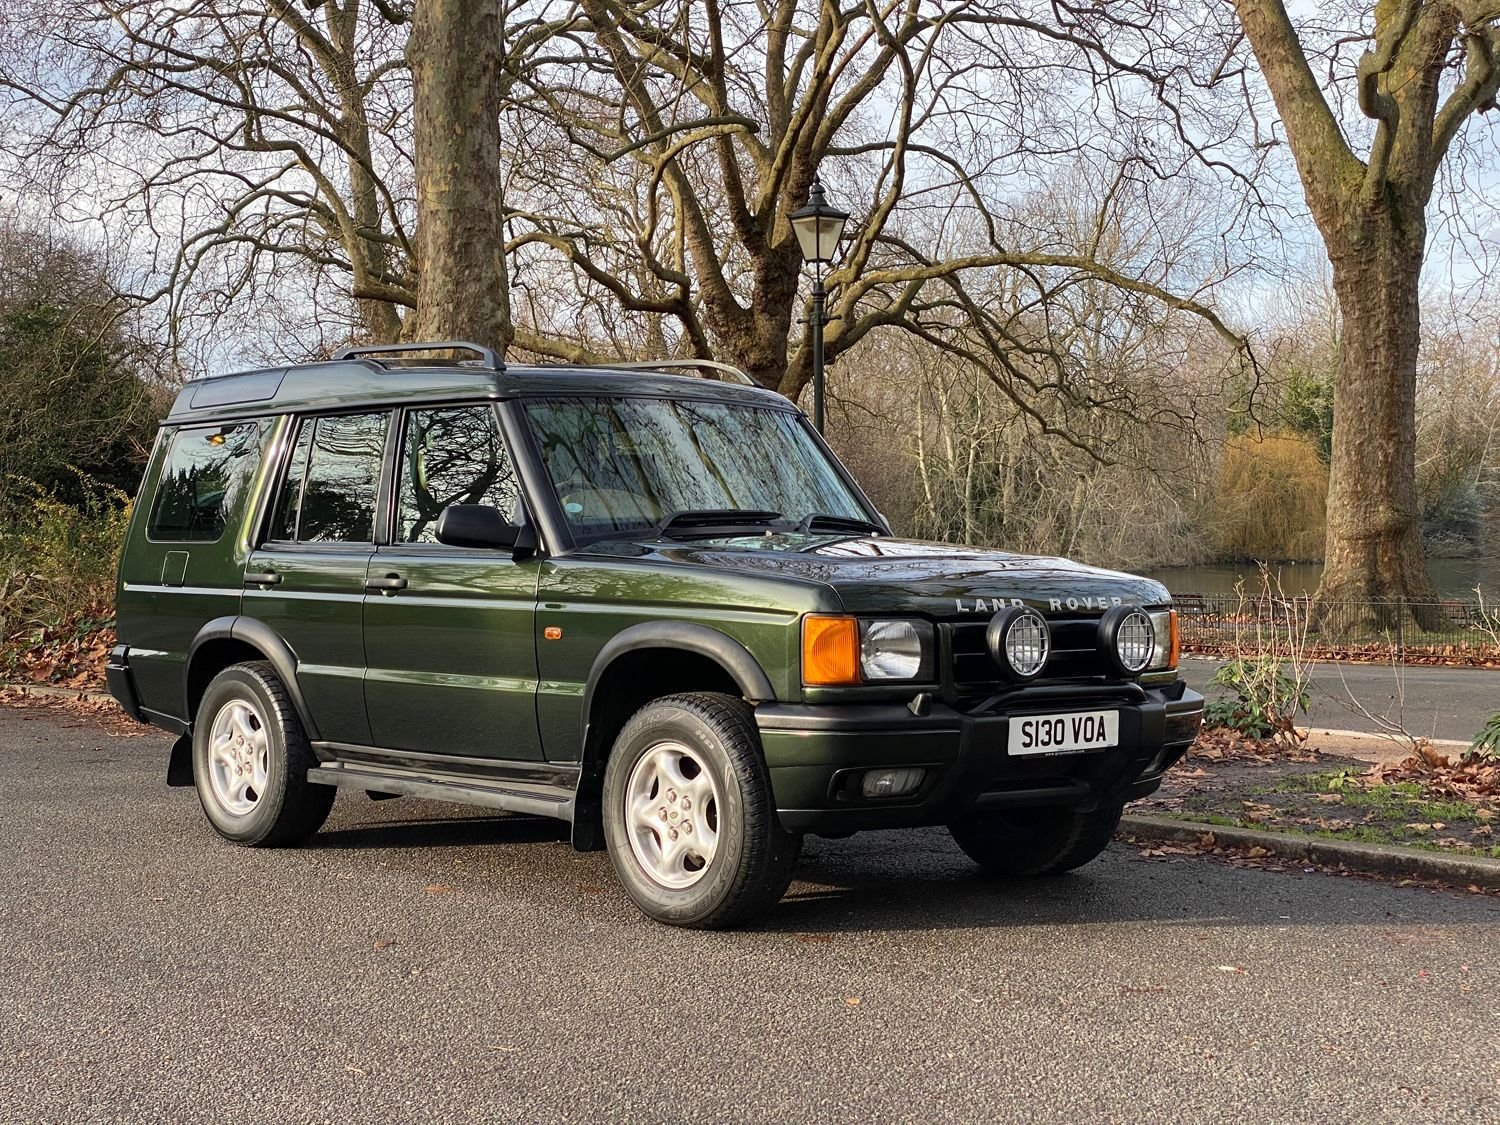 Land Rover Discovery 2. Land Rover Discovery 1998. Land Rover Discovery 2.7 at. Land Rover Discovery 1998 Зебра. Отзывы ленд ровер дискавери 2.7